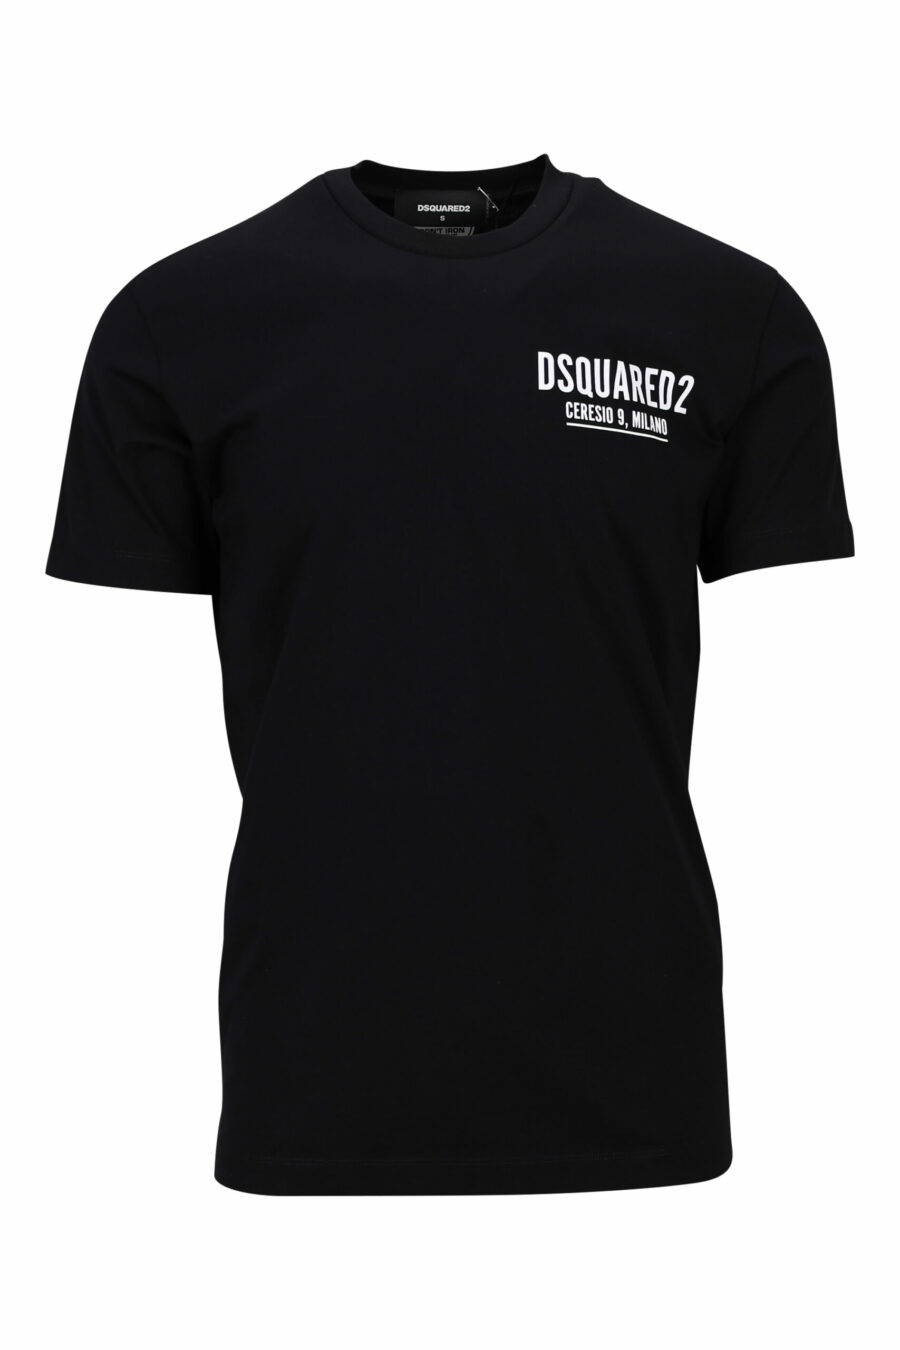 Camiseta negra con minilogo "ceresio 9, milano" - 8054148505264 scaled